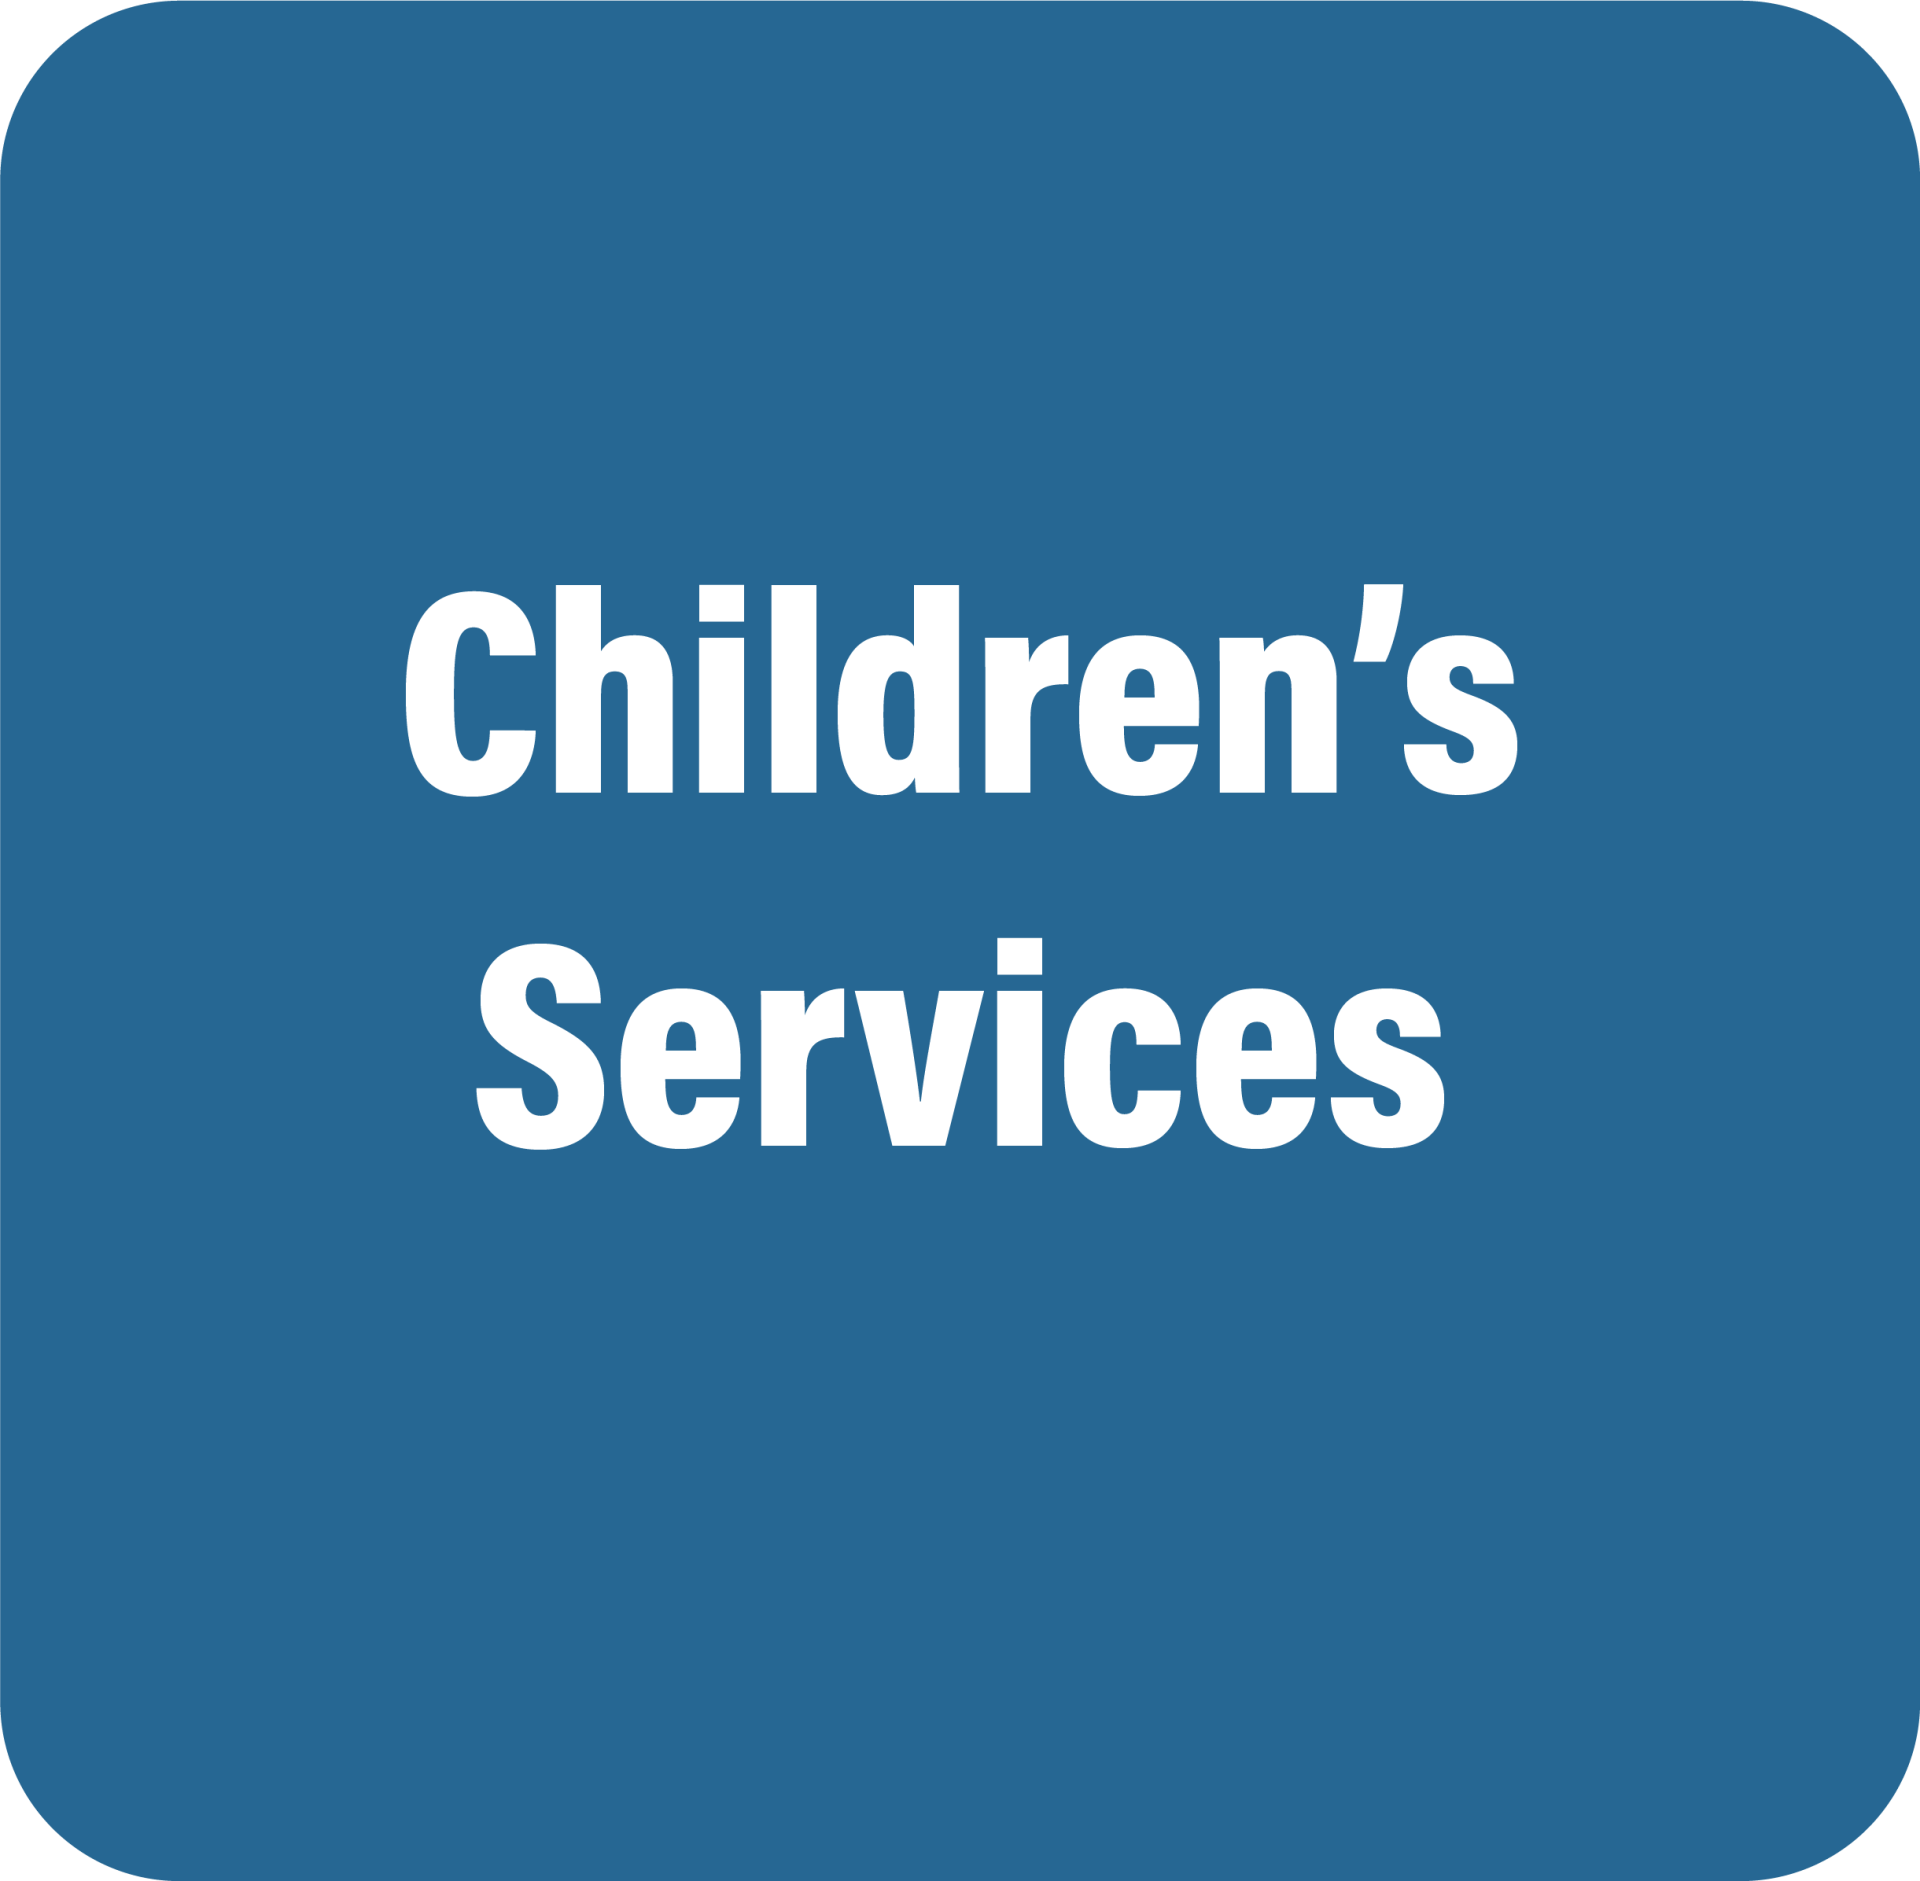 Children's Services Button